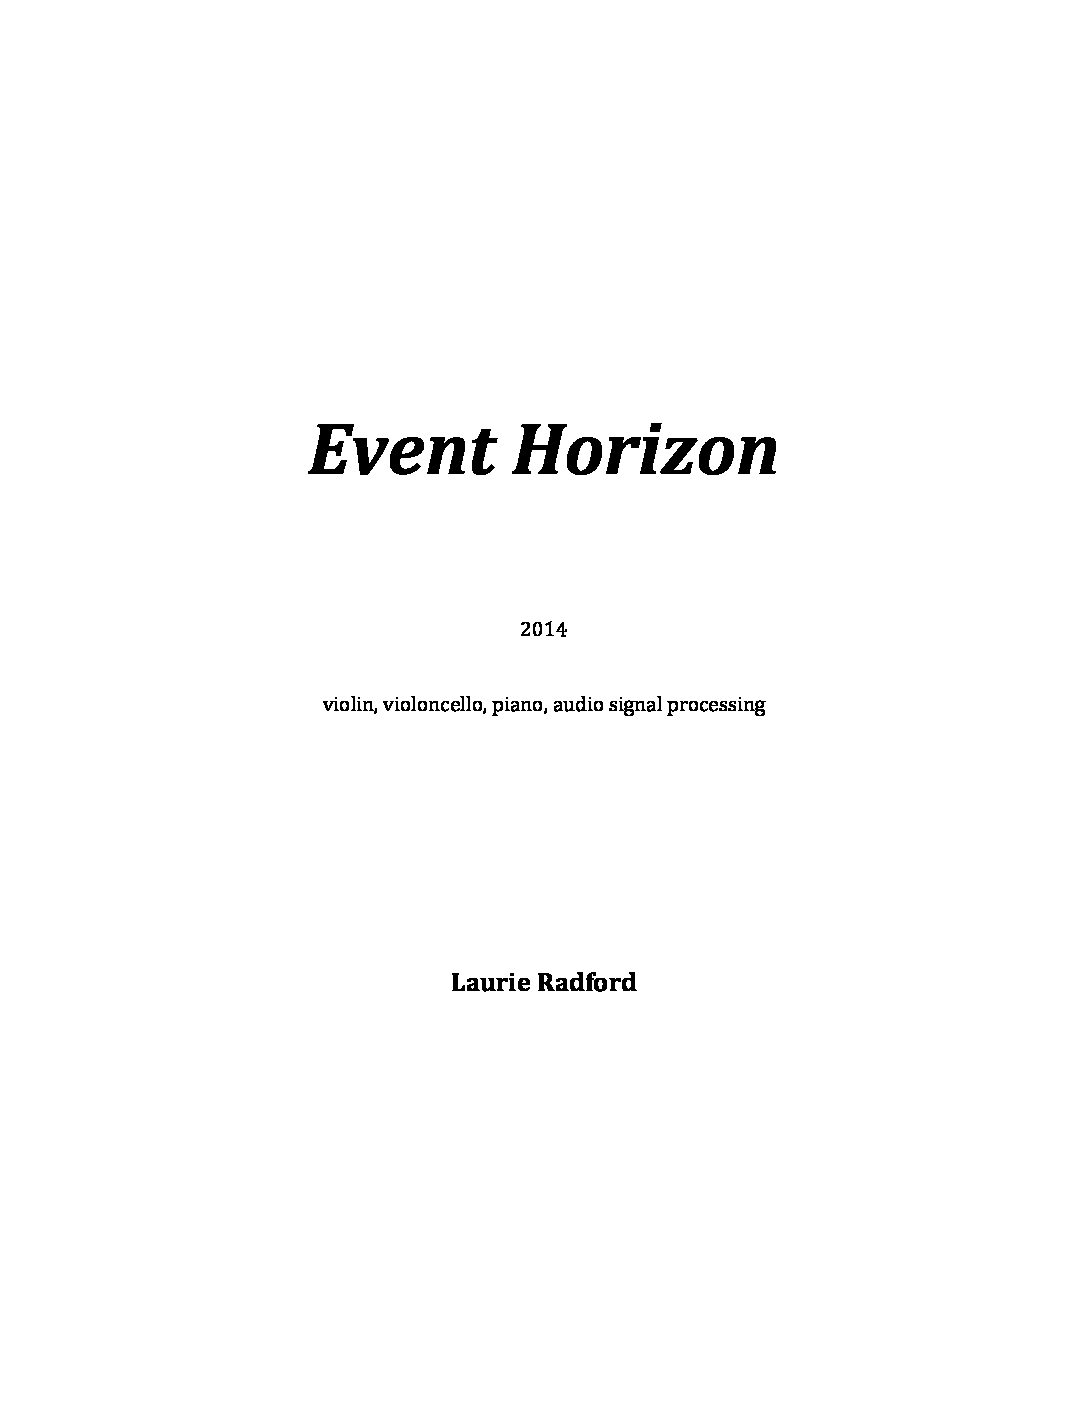 Event Horizon - Laurie Radford - Score-6p